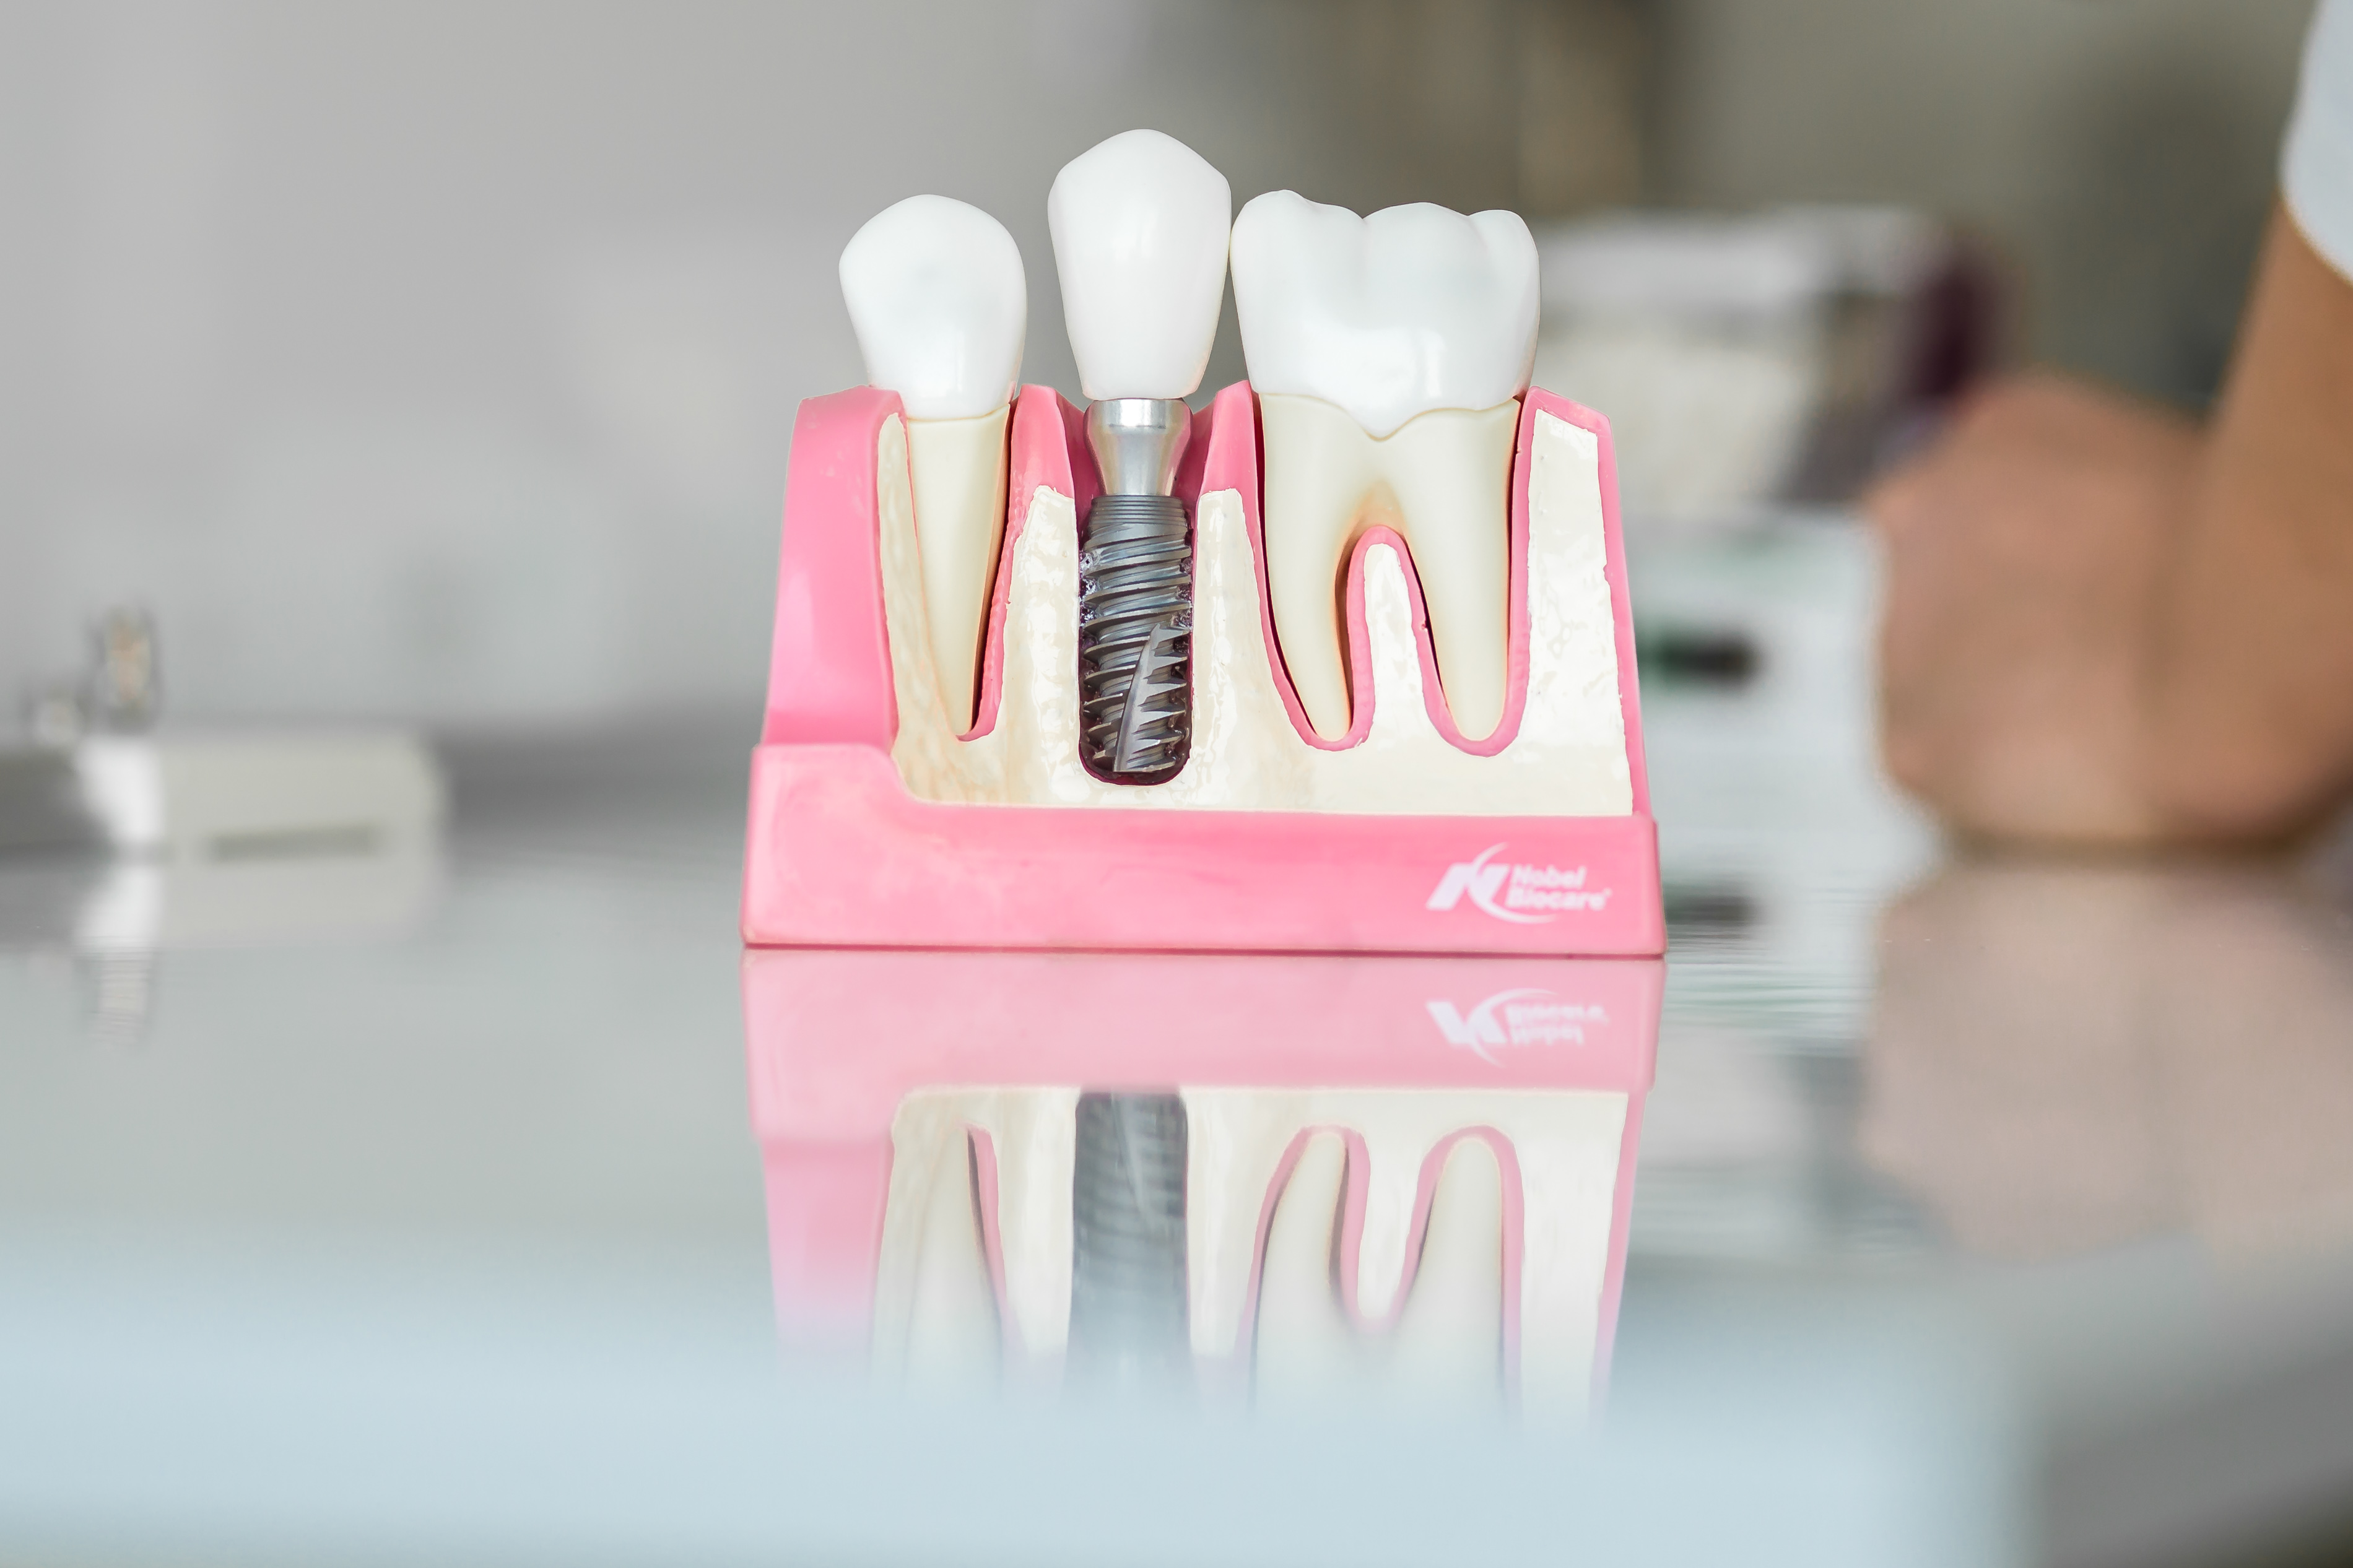 La guida completa per un impianto dentale: parte 1